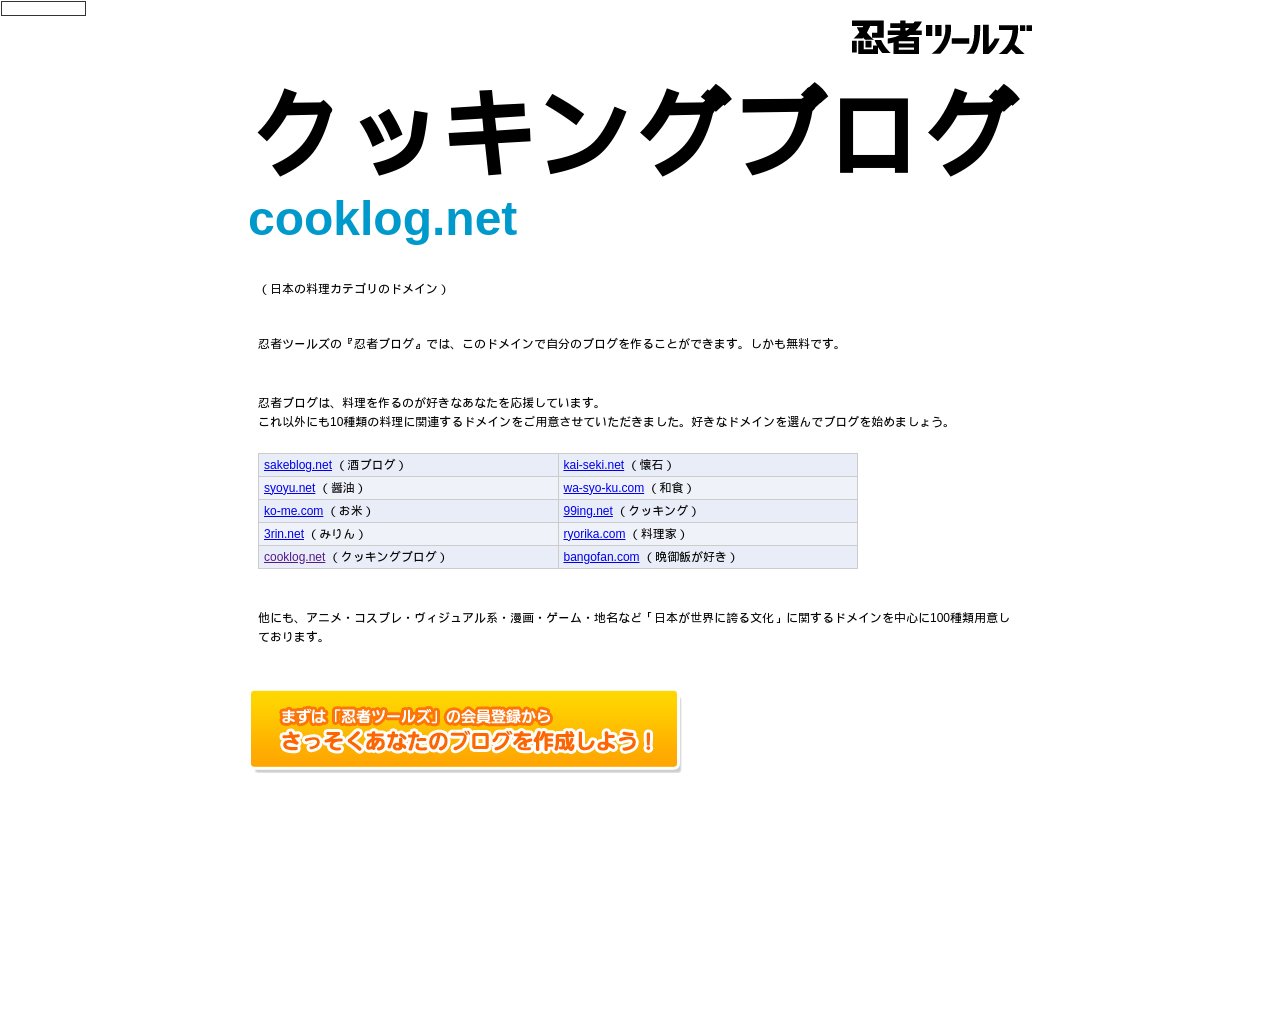 cooklog.net